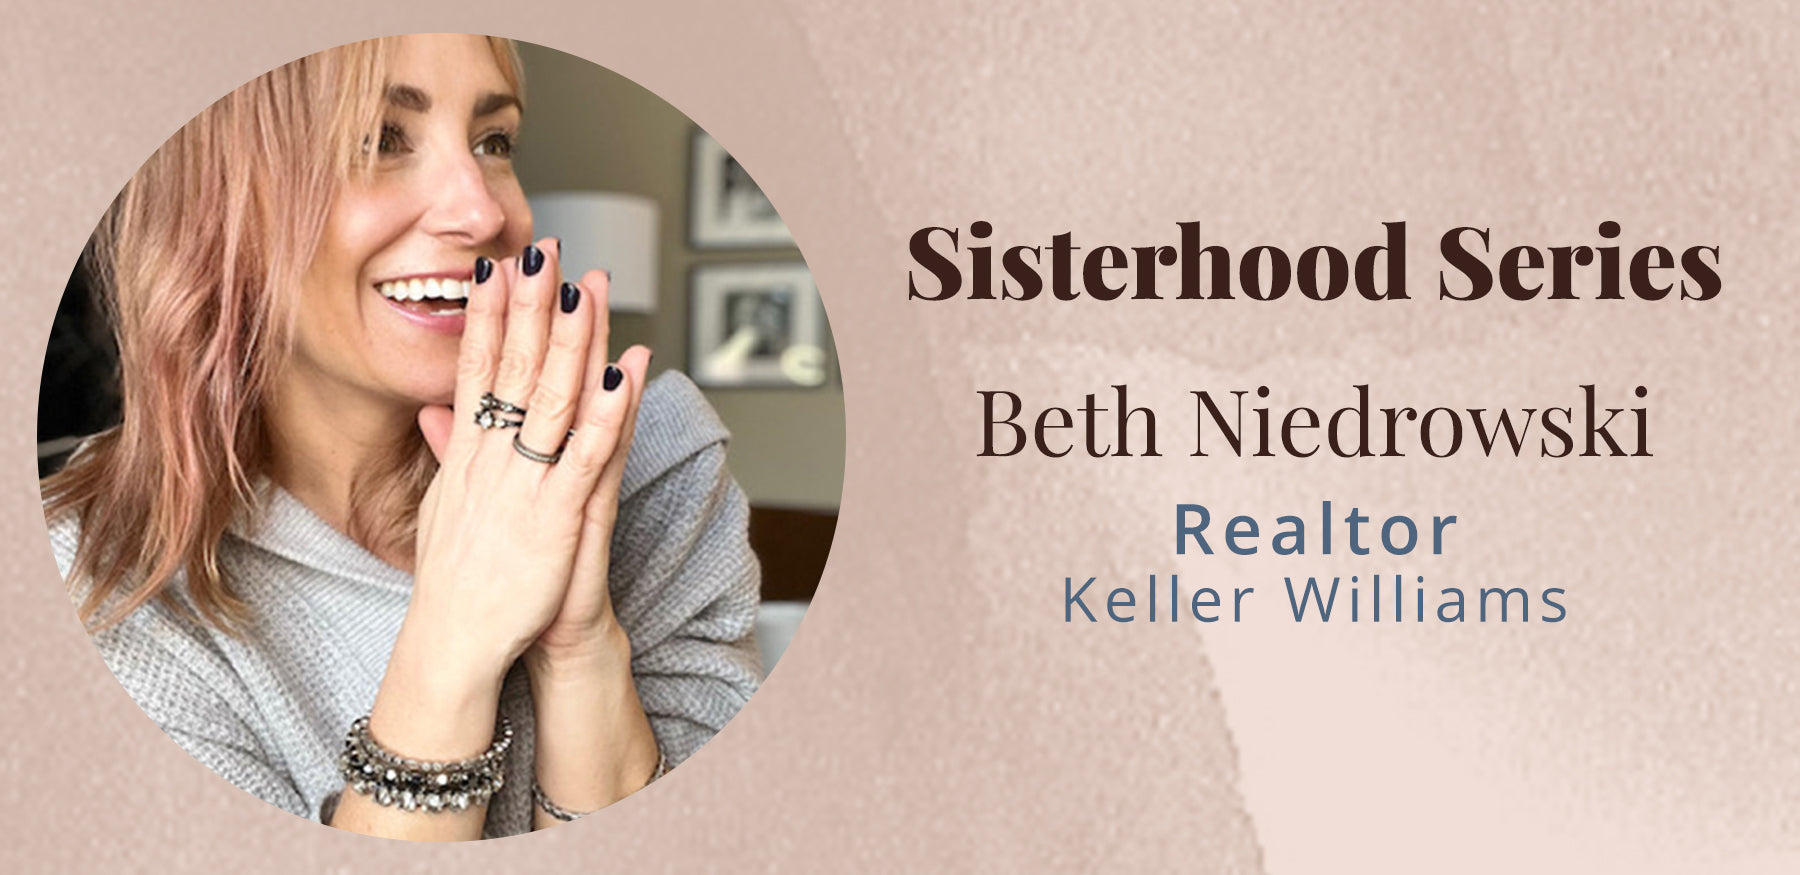 Sisterhood Series with Beth Niedrowski